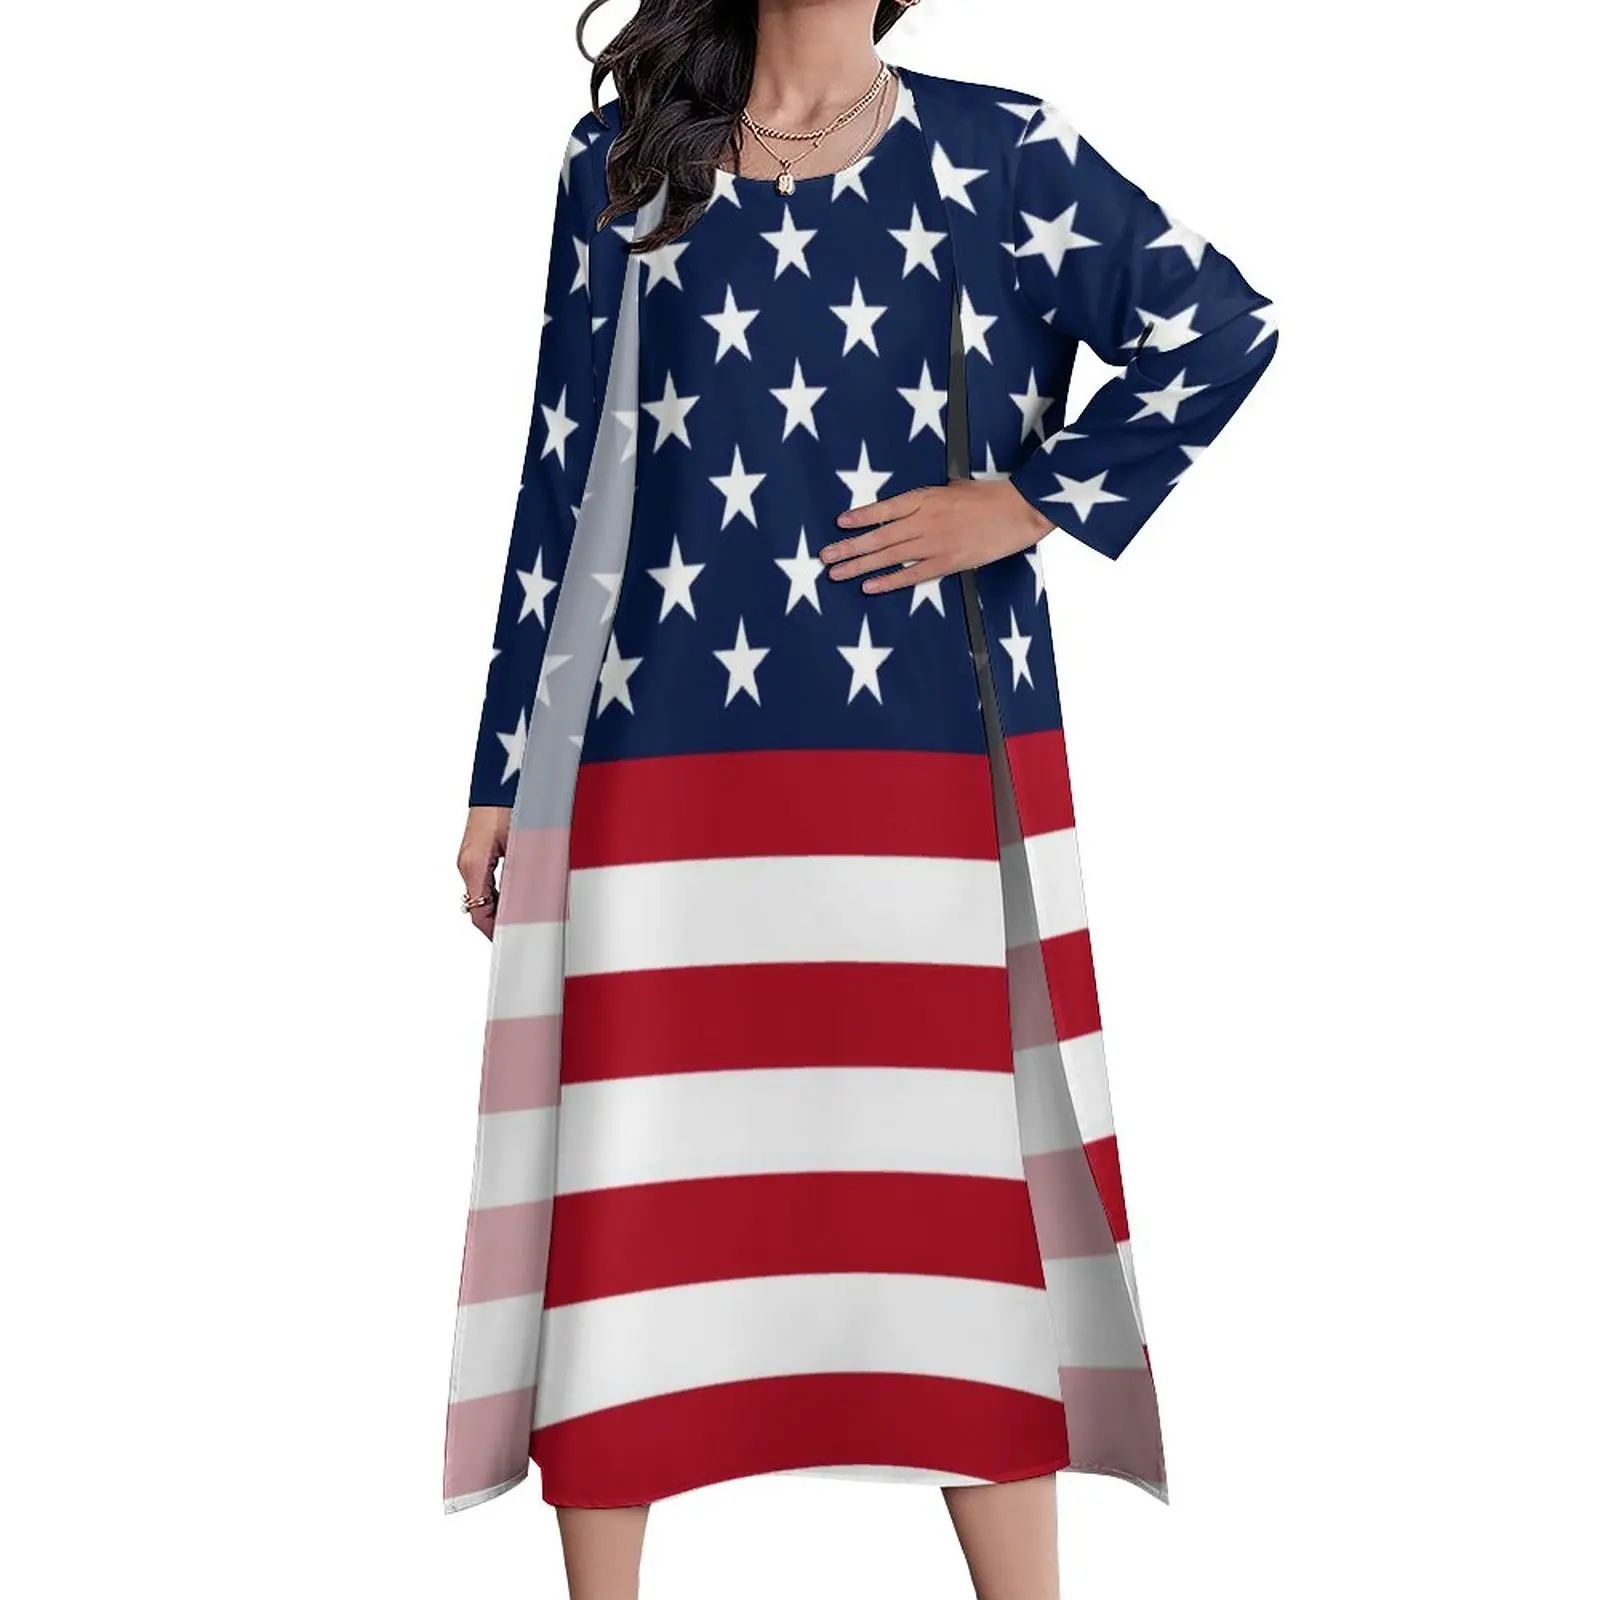 

Женское длинное платье со звездами, красное, белое, синее платье-макси в полоску с флагом США и длинными рукавами, в богемном стиле